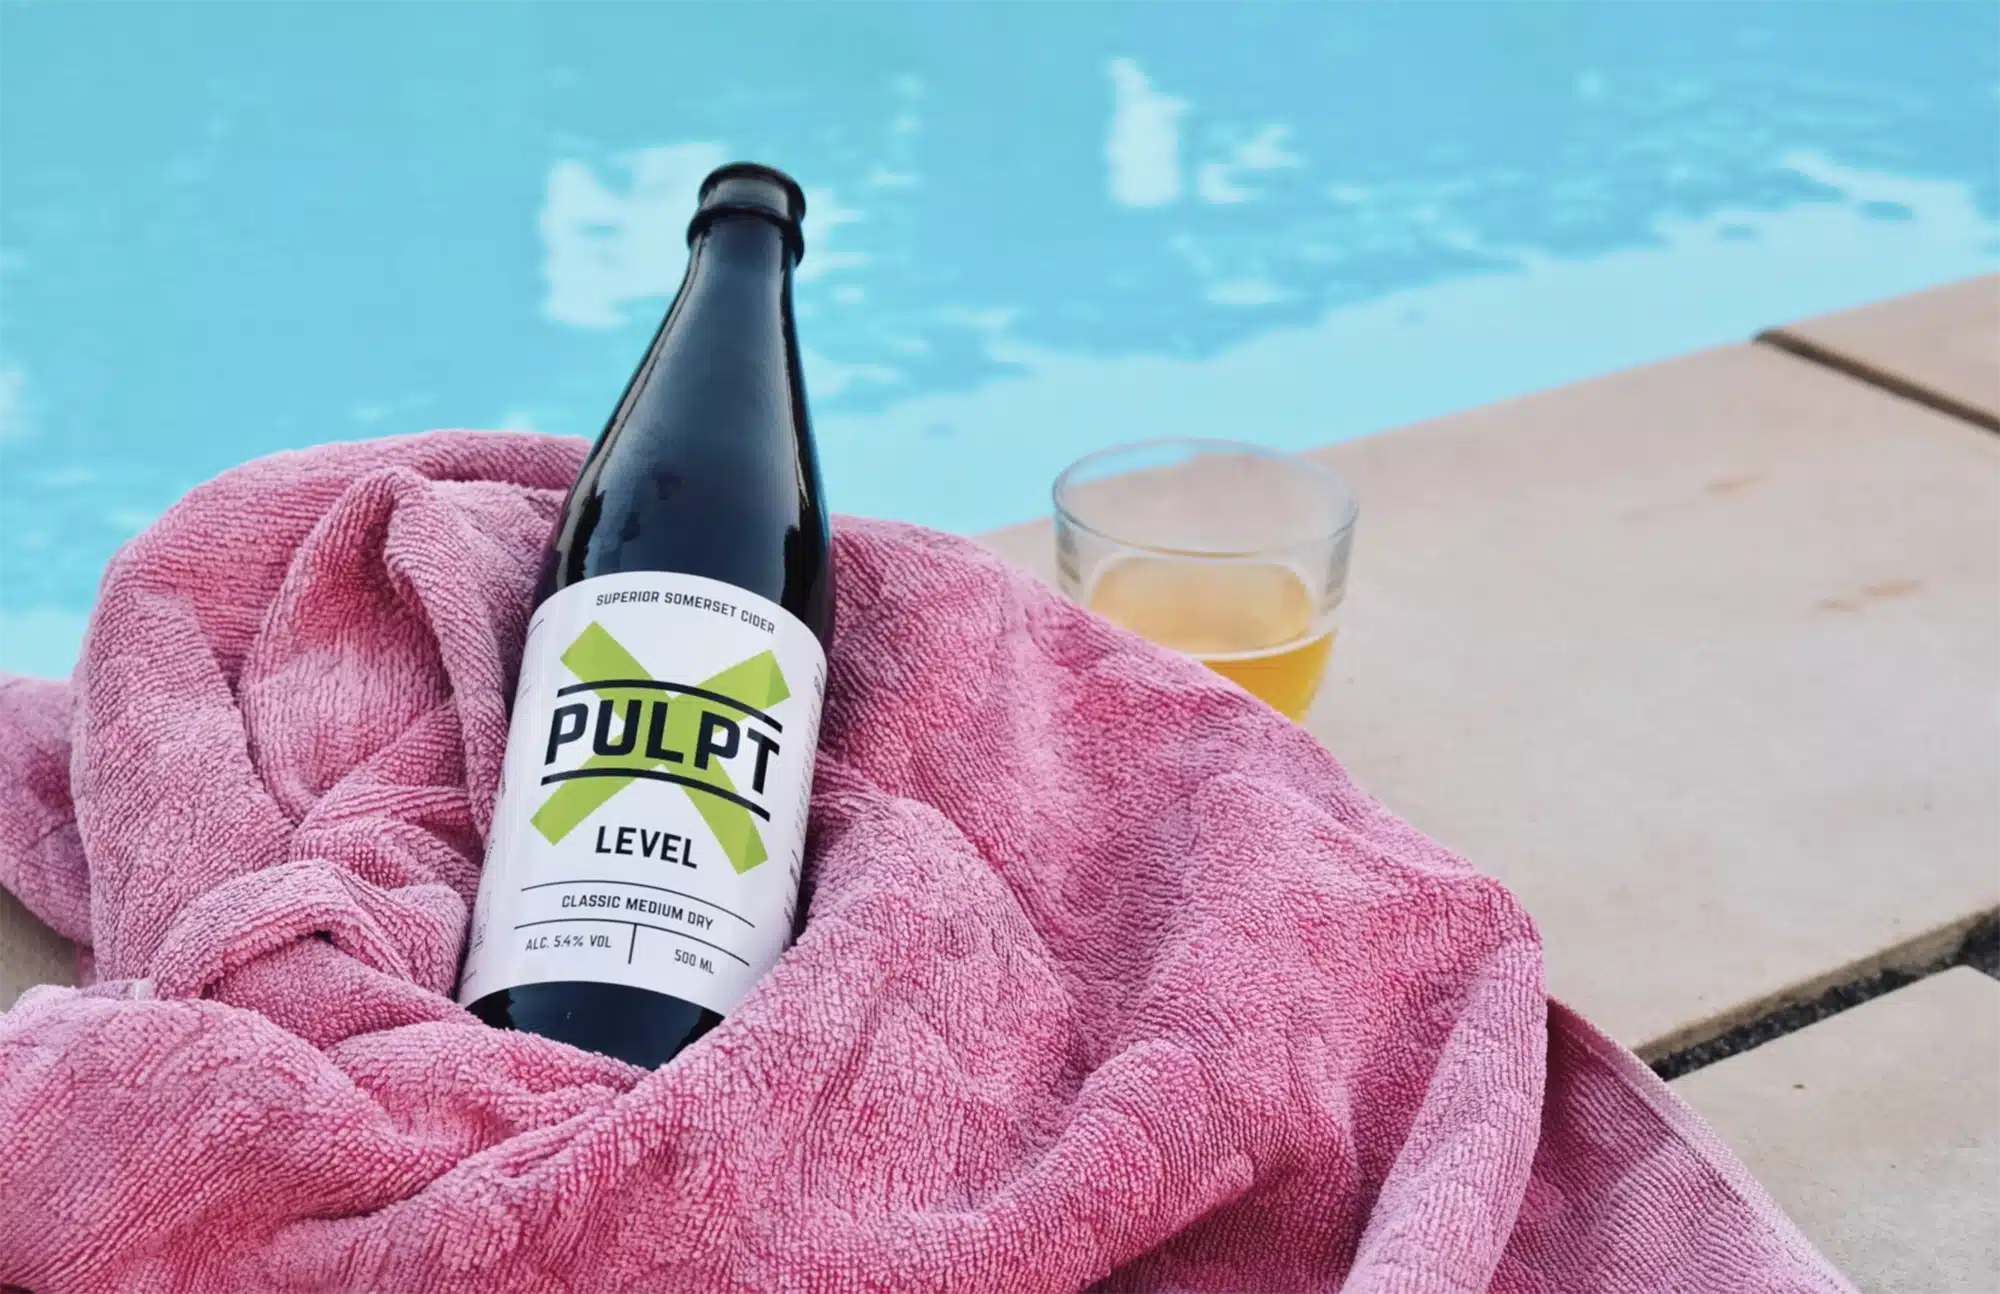 Pulpt Cider at pool